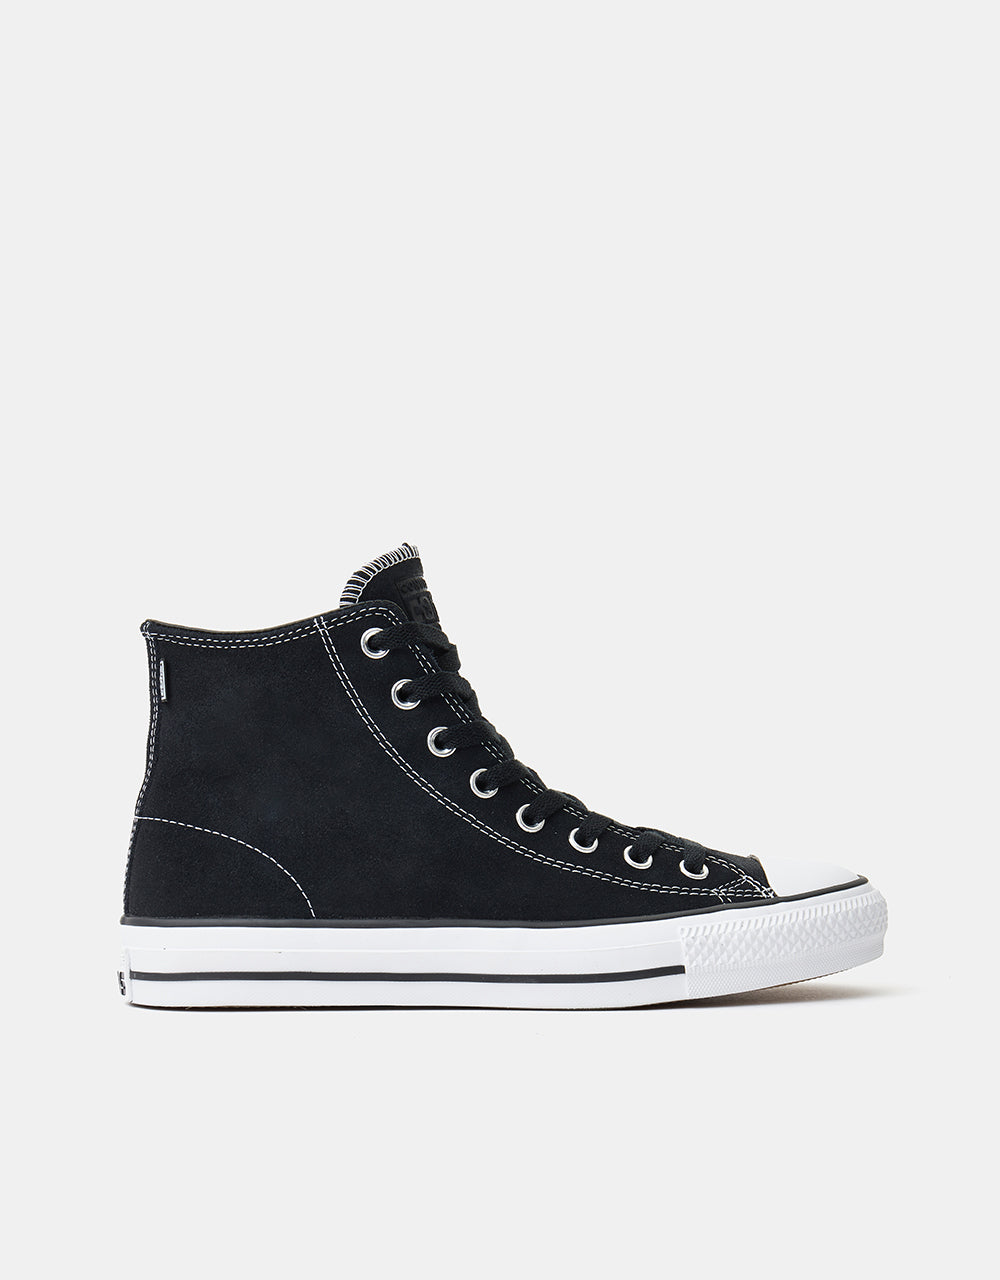 Converse CTAS Pro Hi Skate Shoes - Black/Black/White